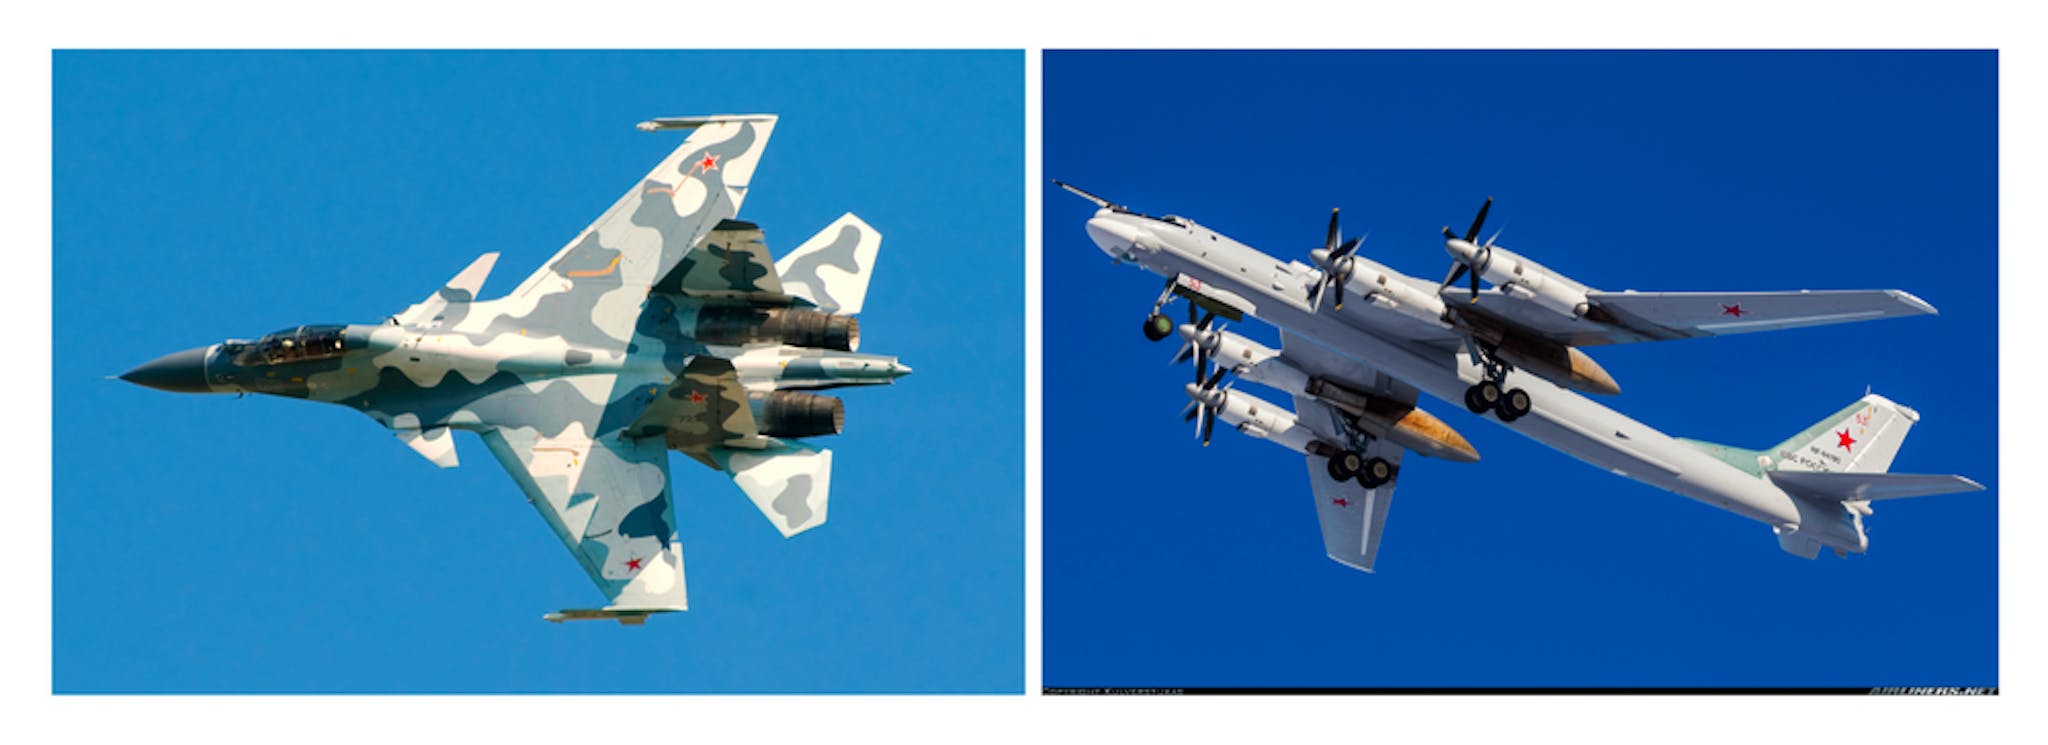 Soldan sağa: (1) Su-30, (2) Tu-95